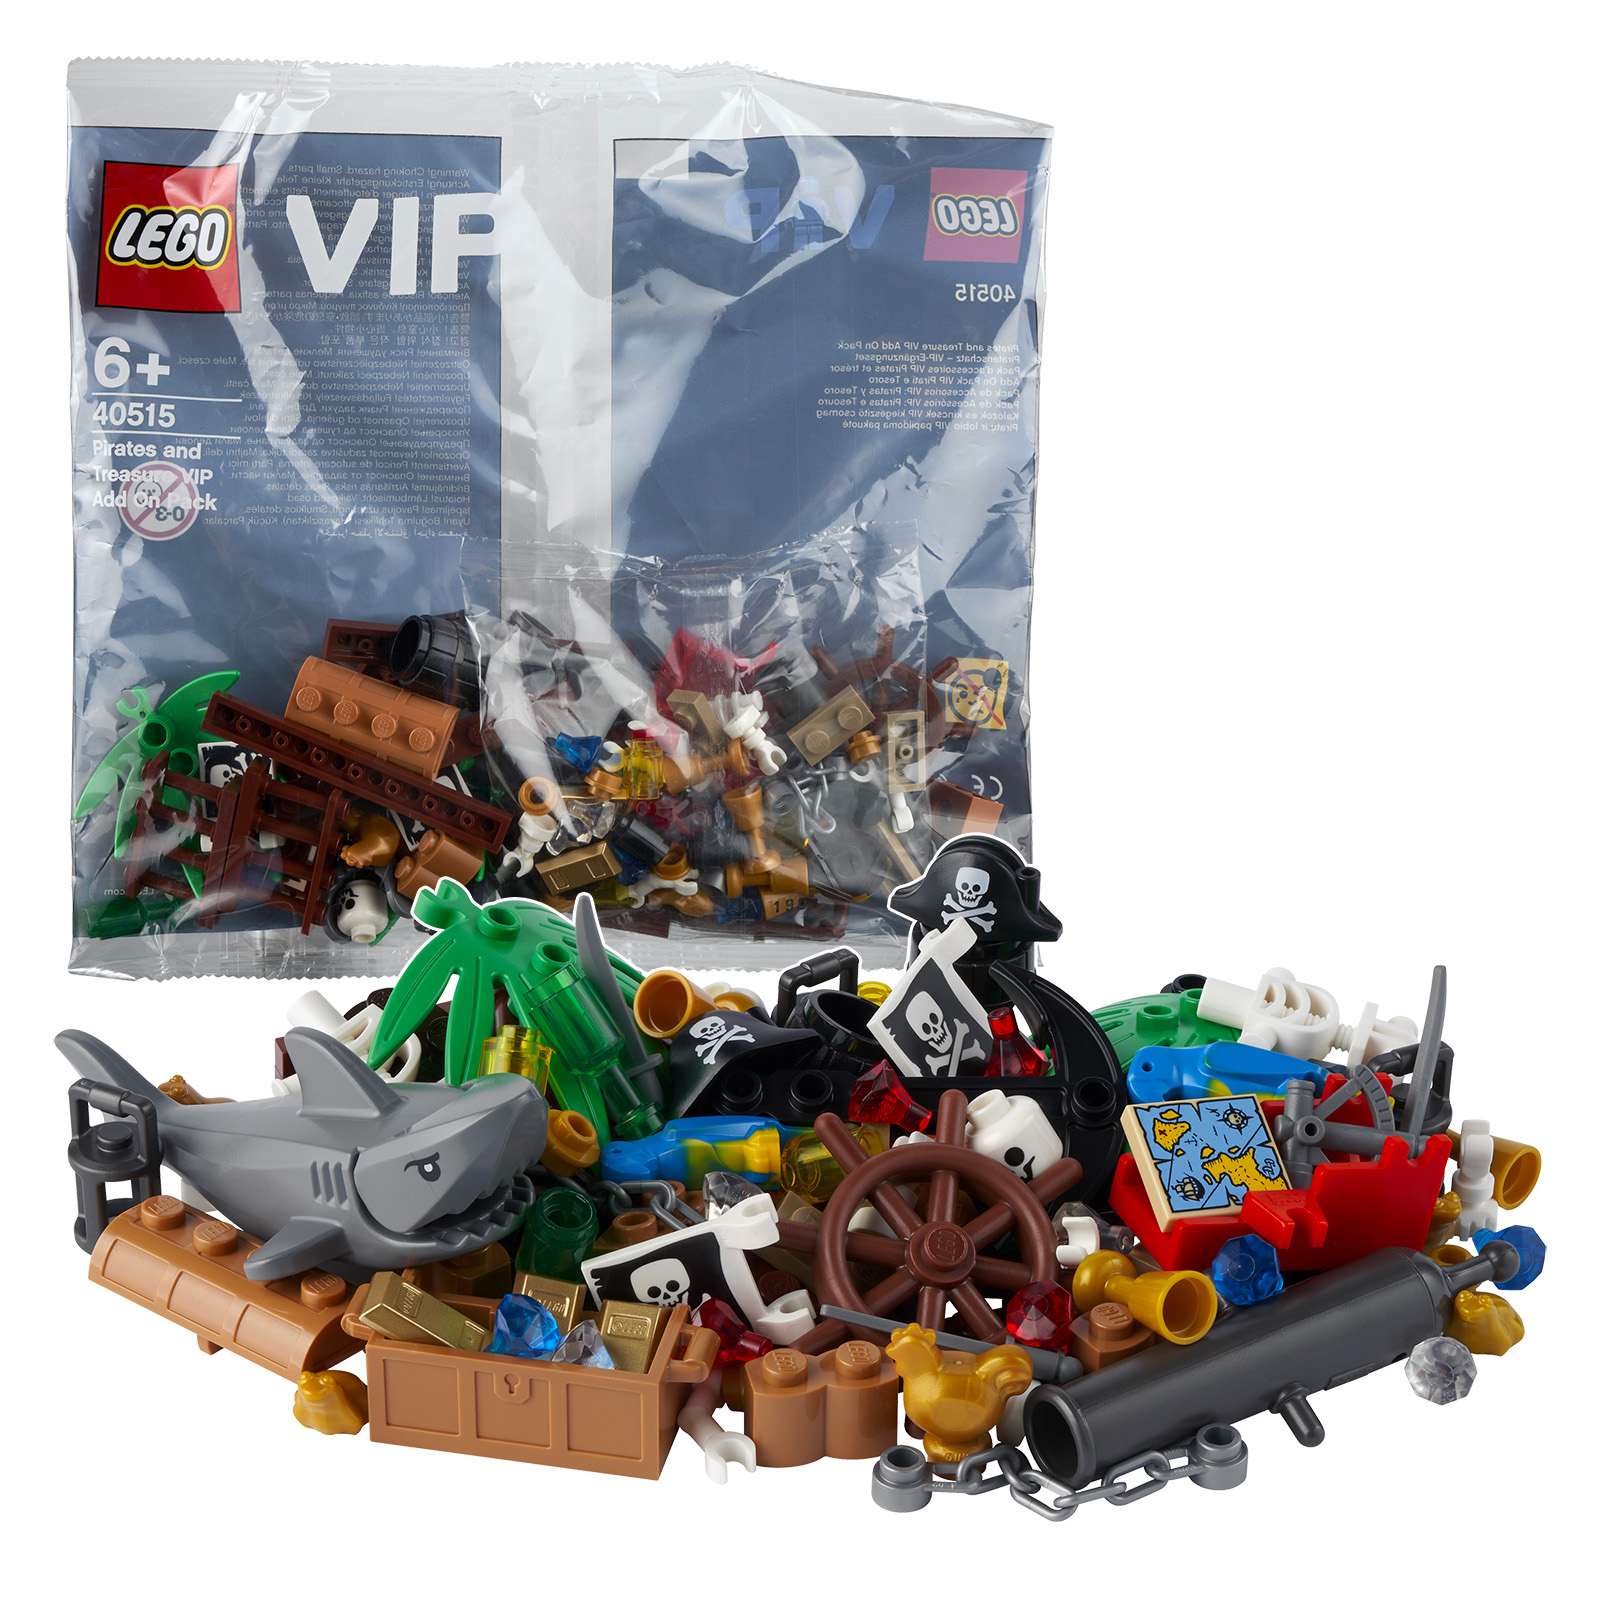 در فروشگاه LEGO: بسته افزودن به بسته پلی کیسه 40515 Pirates and Treasure VIP از 50 یورو رایگان است.